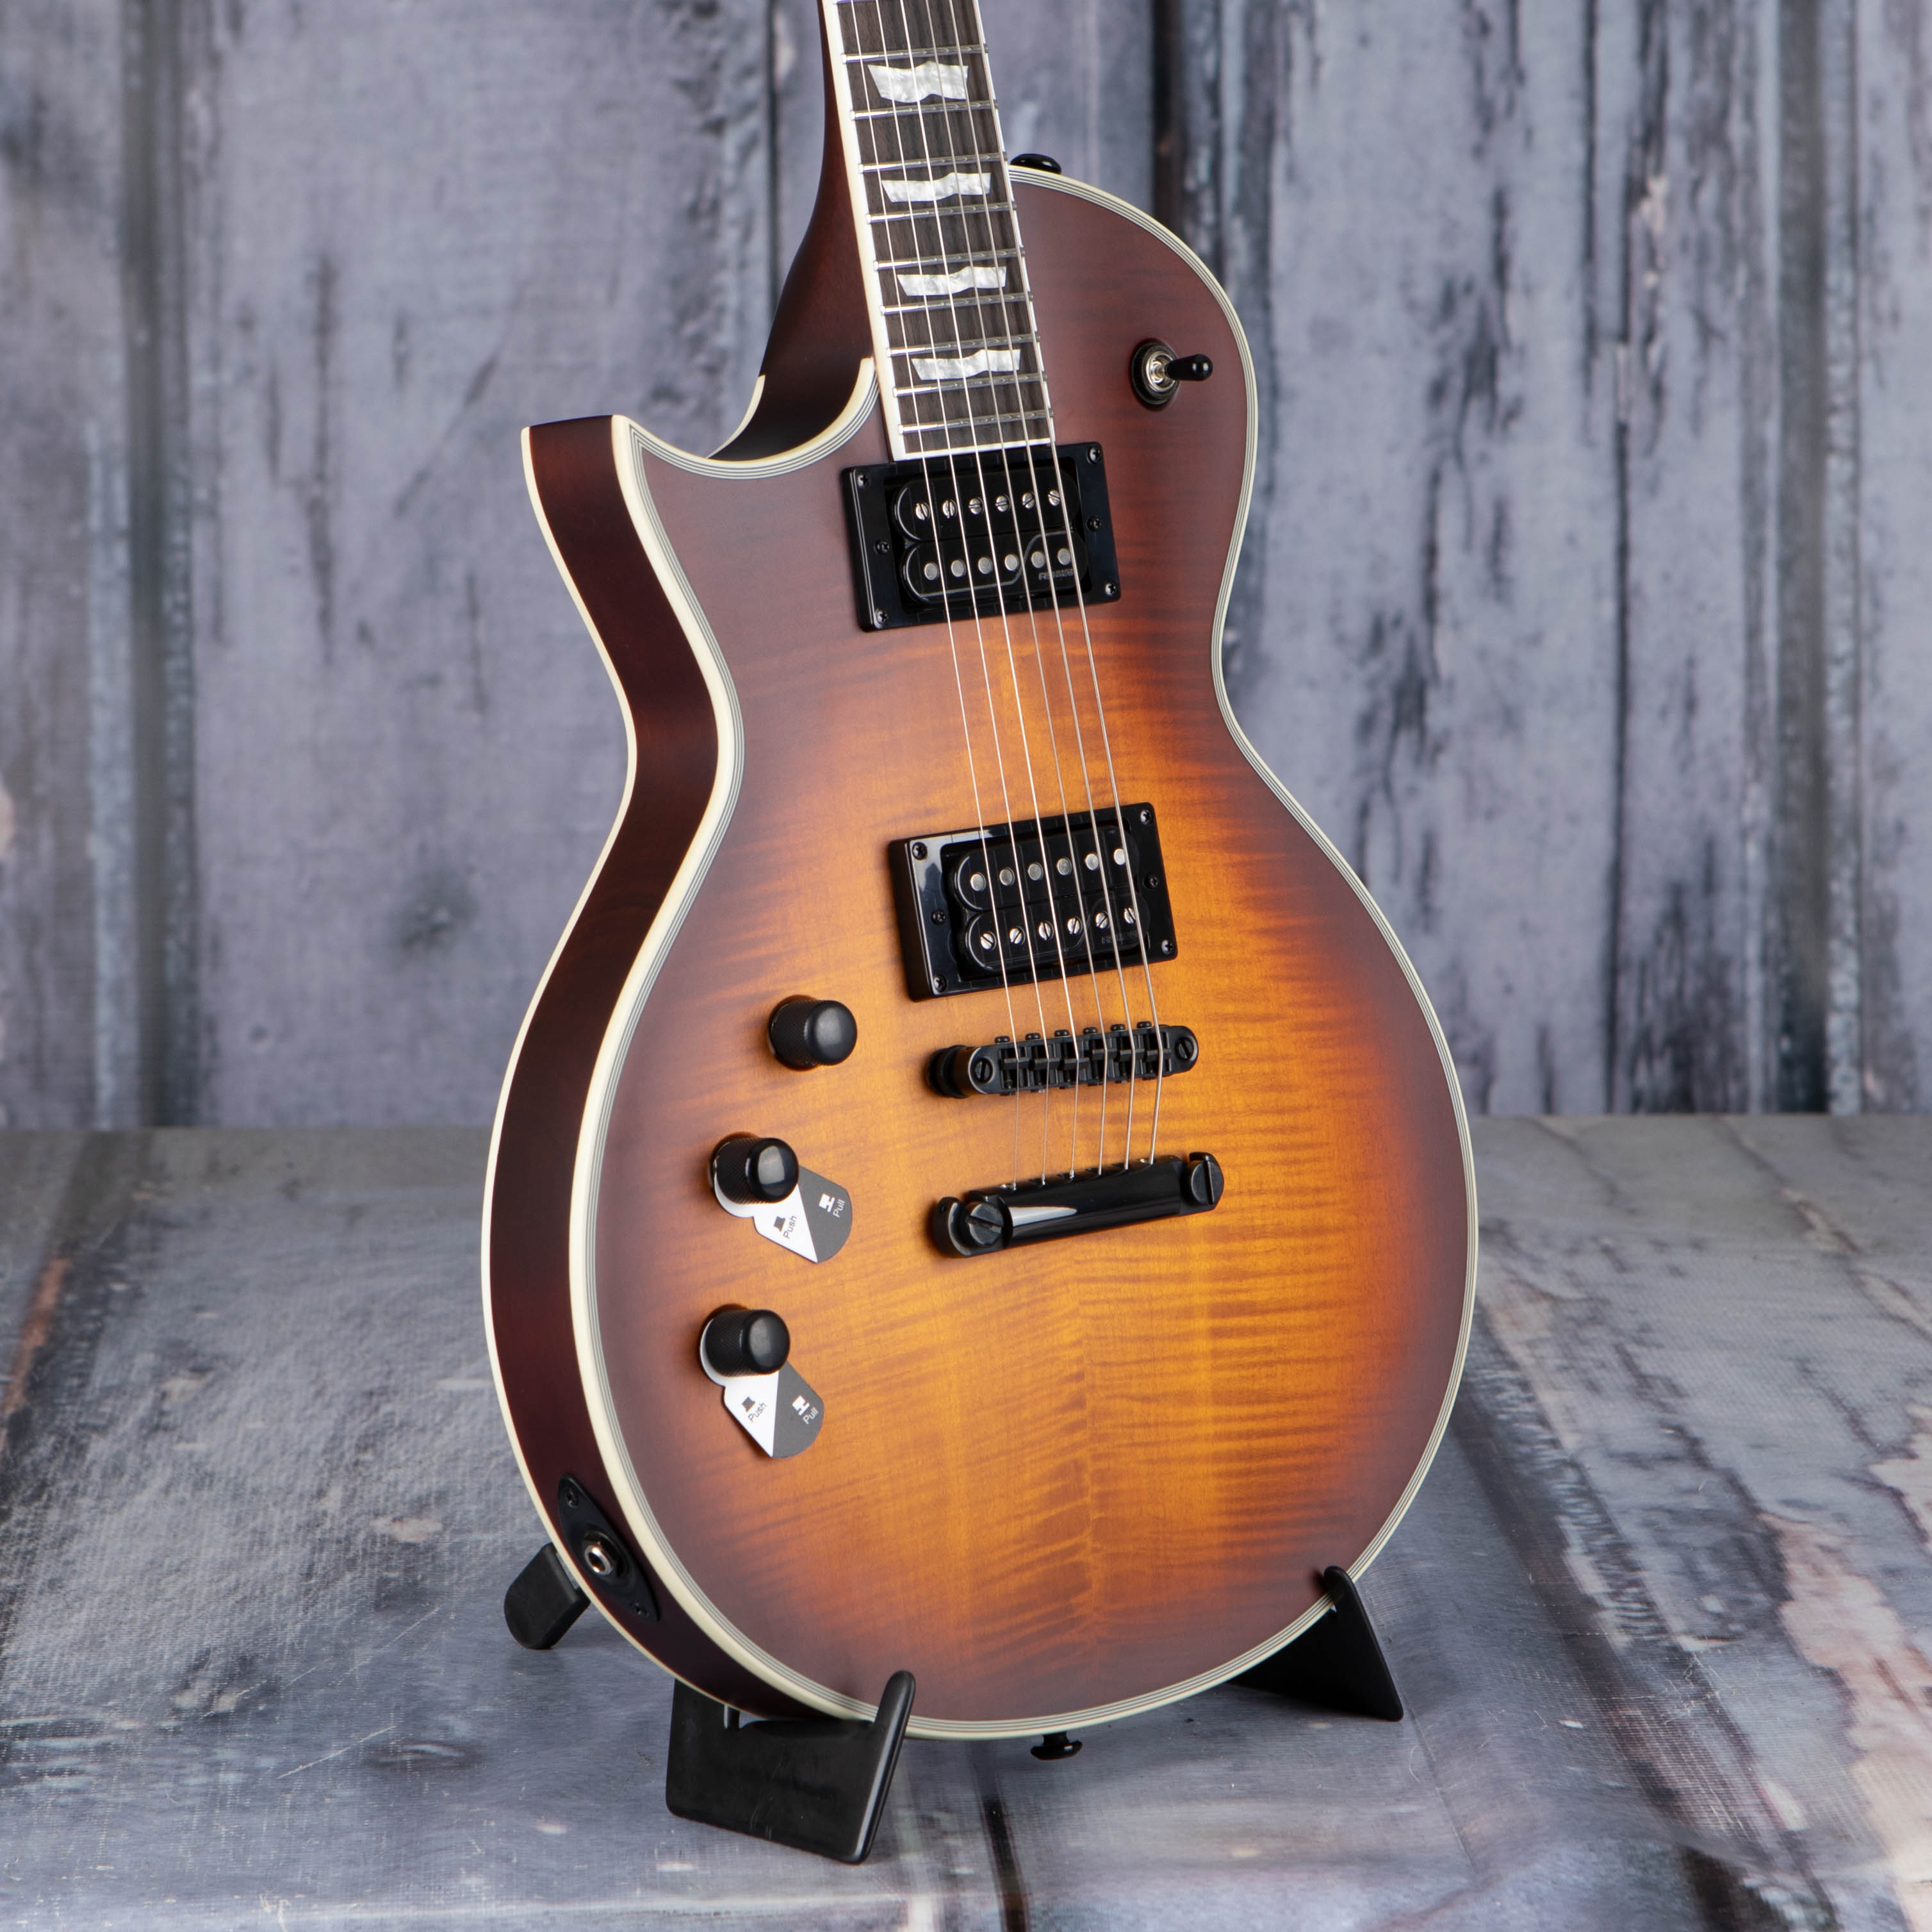 ESP LTD EC-1000T CTM Left-Handed Electric Guitar, Tobacco Sunburst Satin, back closeup